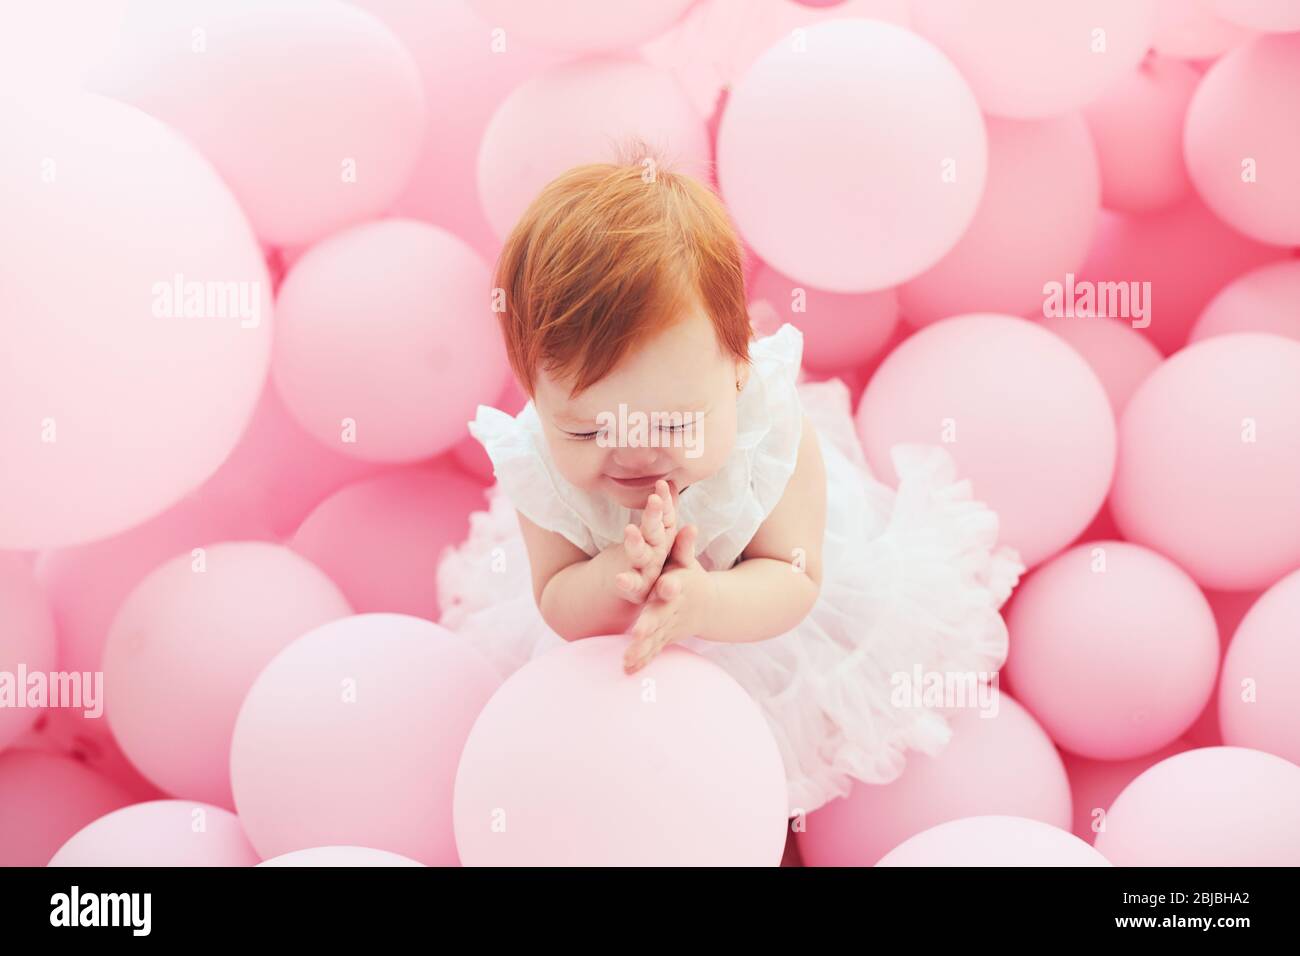 bella, 11 mesi bambina in piedi tra palloncini rosa pastello Foto